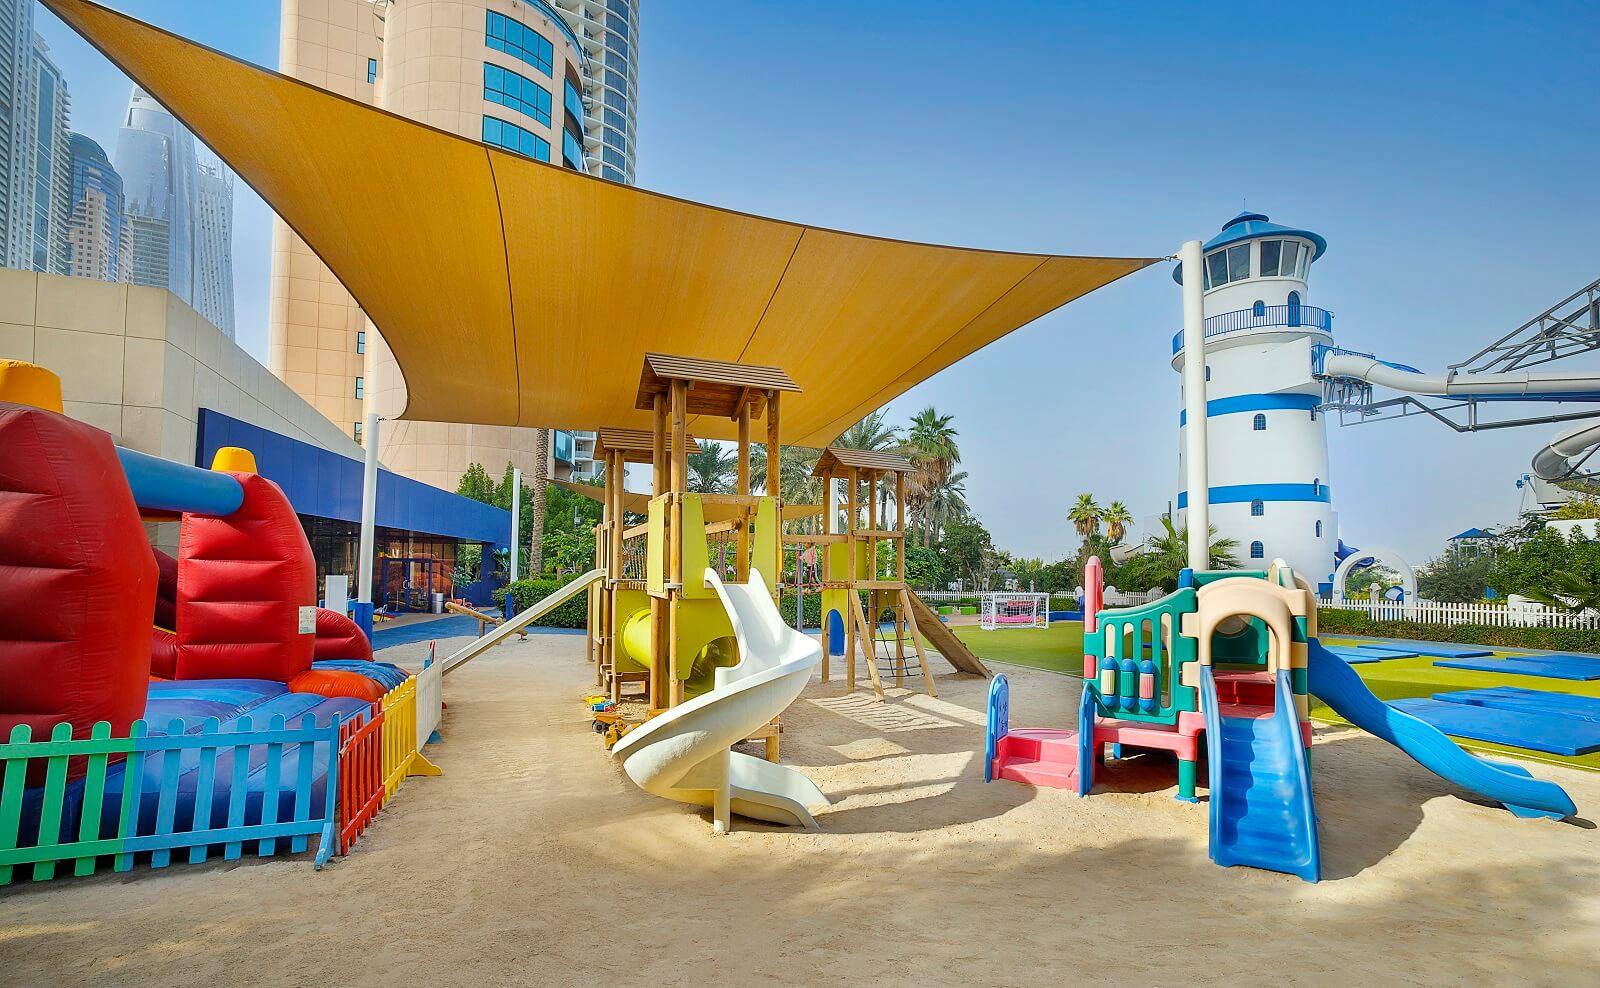 Le Meridien Mina Seyahi Beach Resort and Waterpark Kids Club Outdoor Play